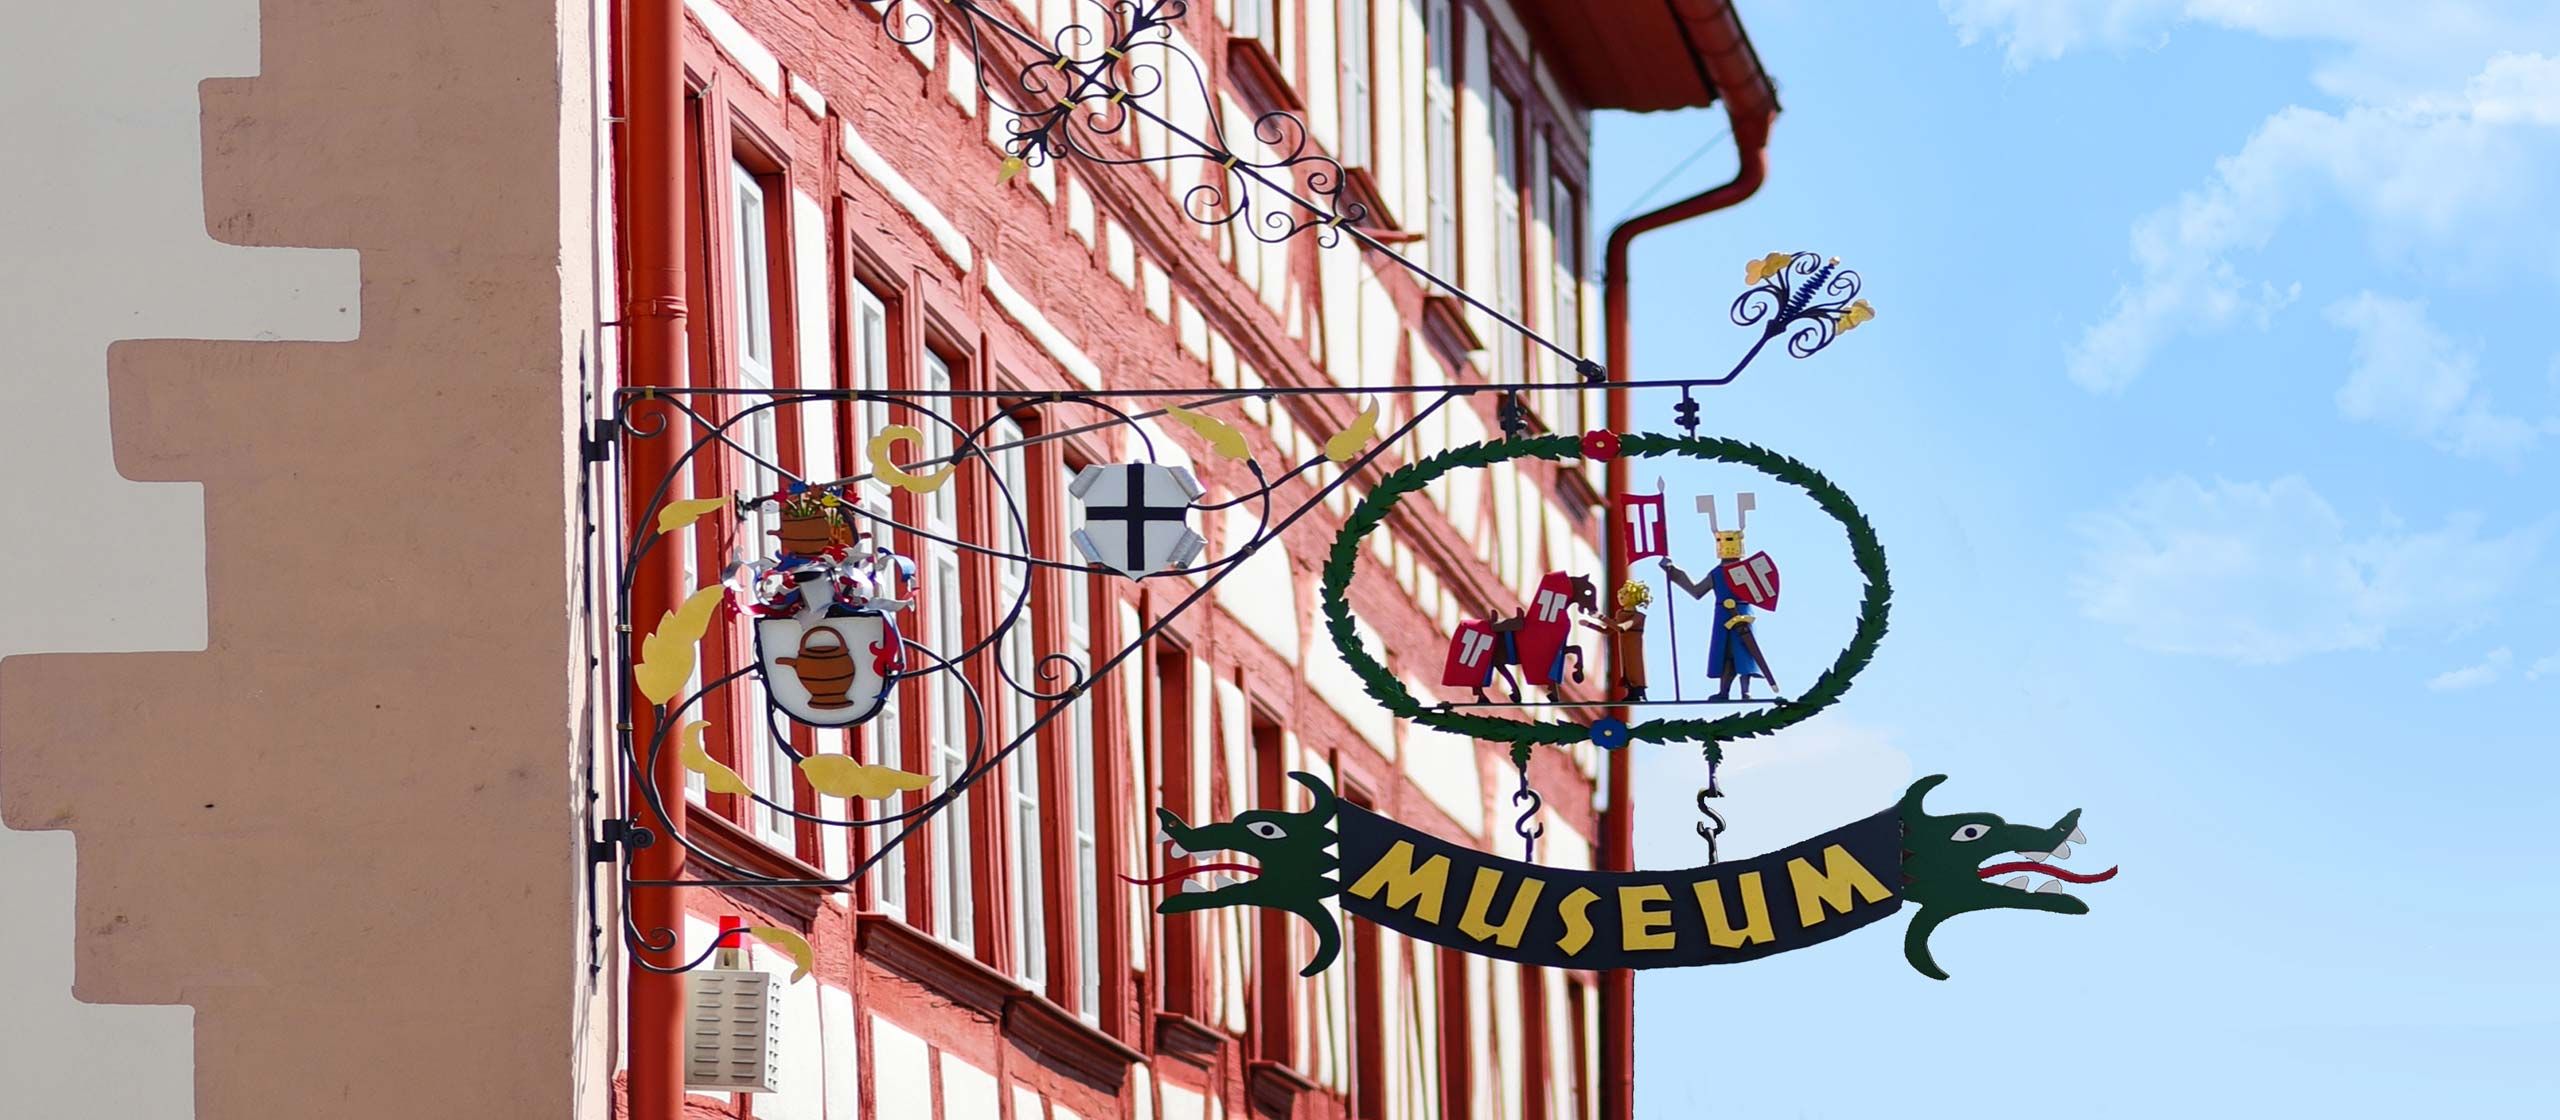 Museen in der Altmühl-Mönchswald-Region